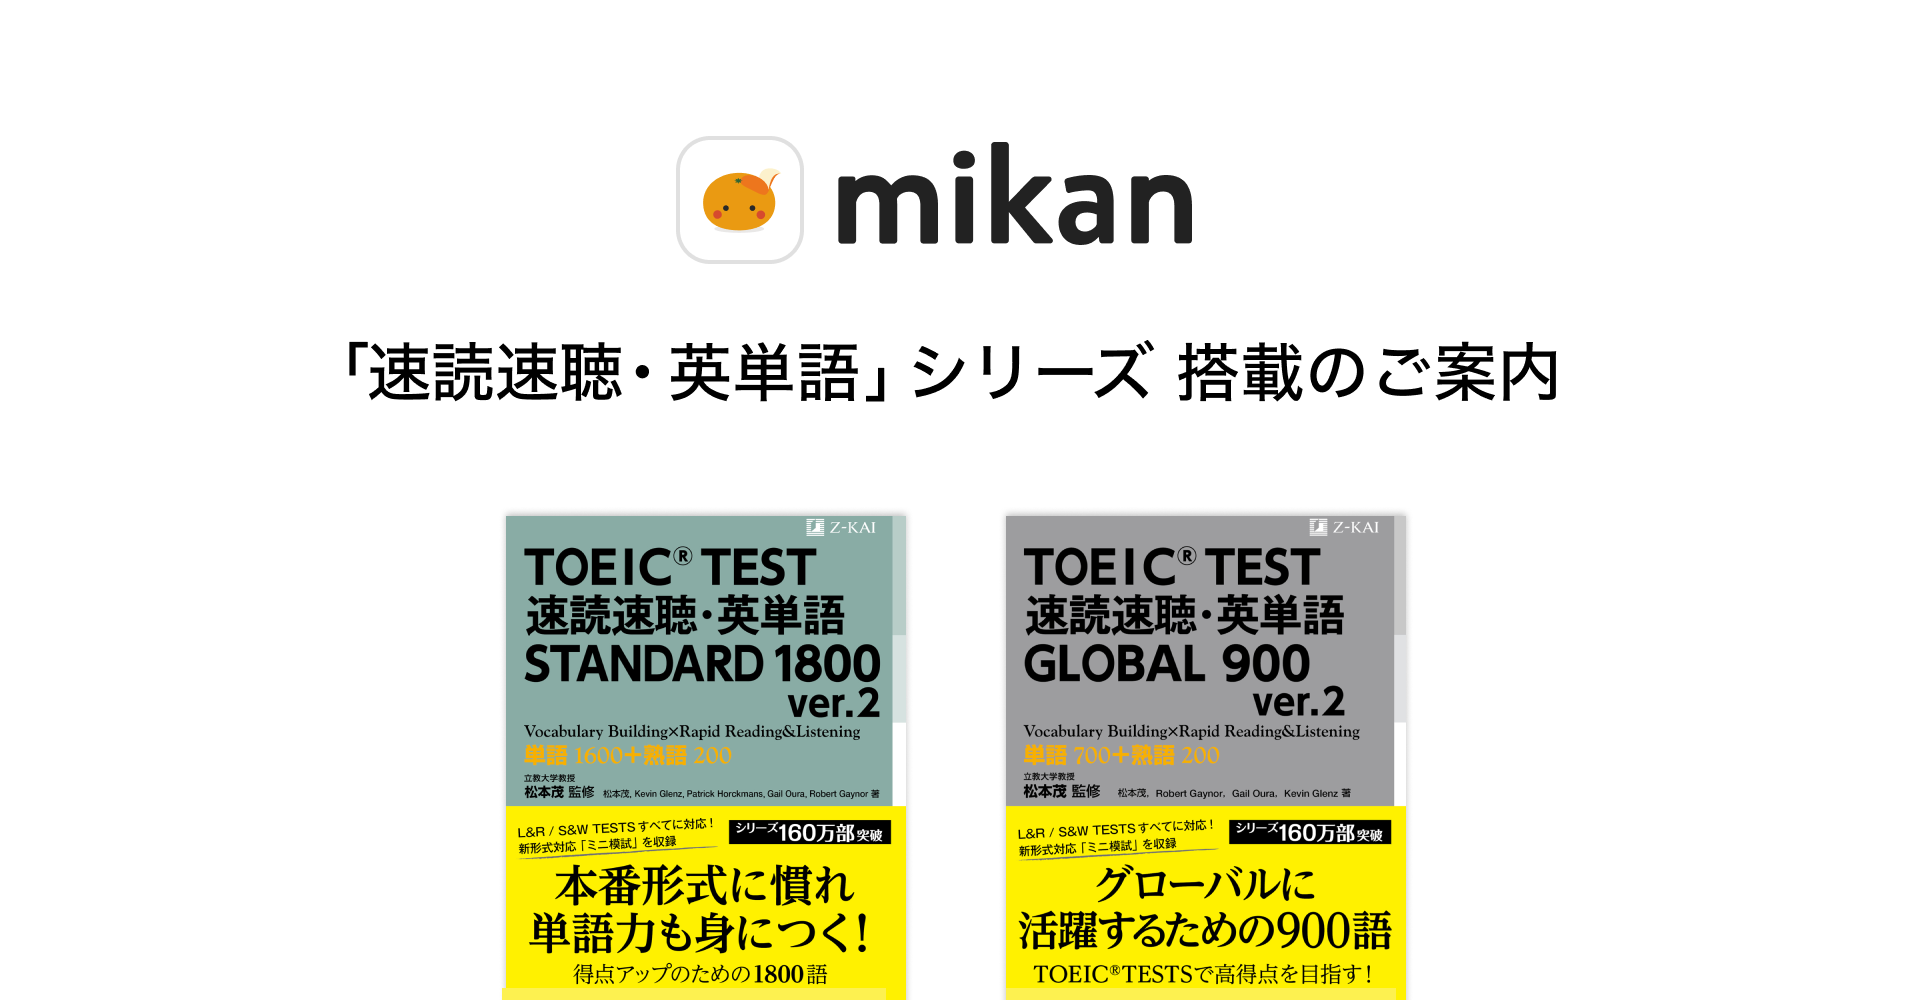 株式会社z会caが発行している Toeic L R Test対策の 速読速聴 英単語 シリーズを２冊同時に英単語アプリ Mikanに搭載 株式会社mikanのプレスリリース